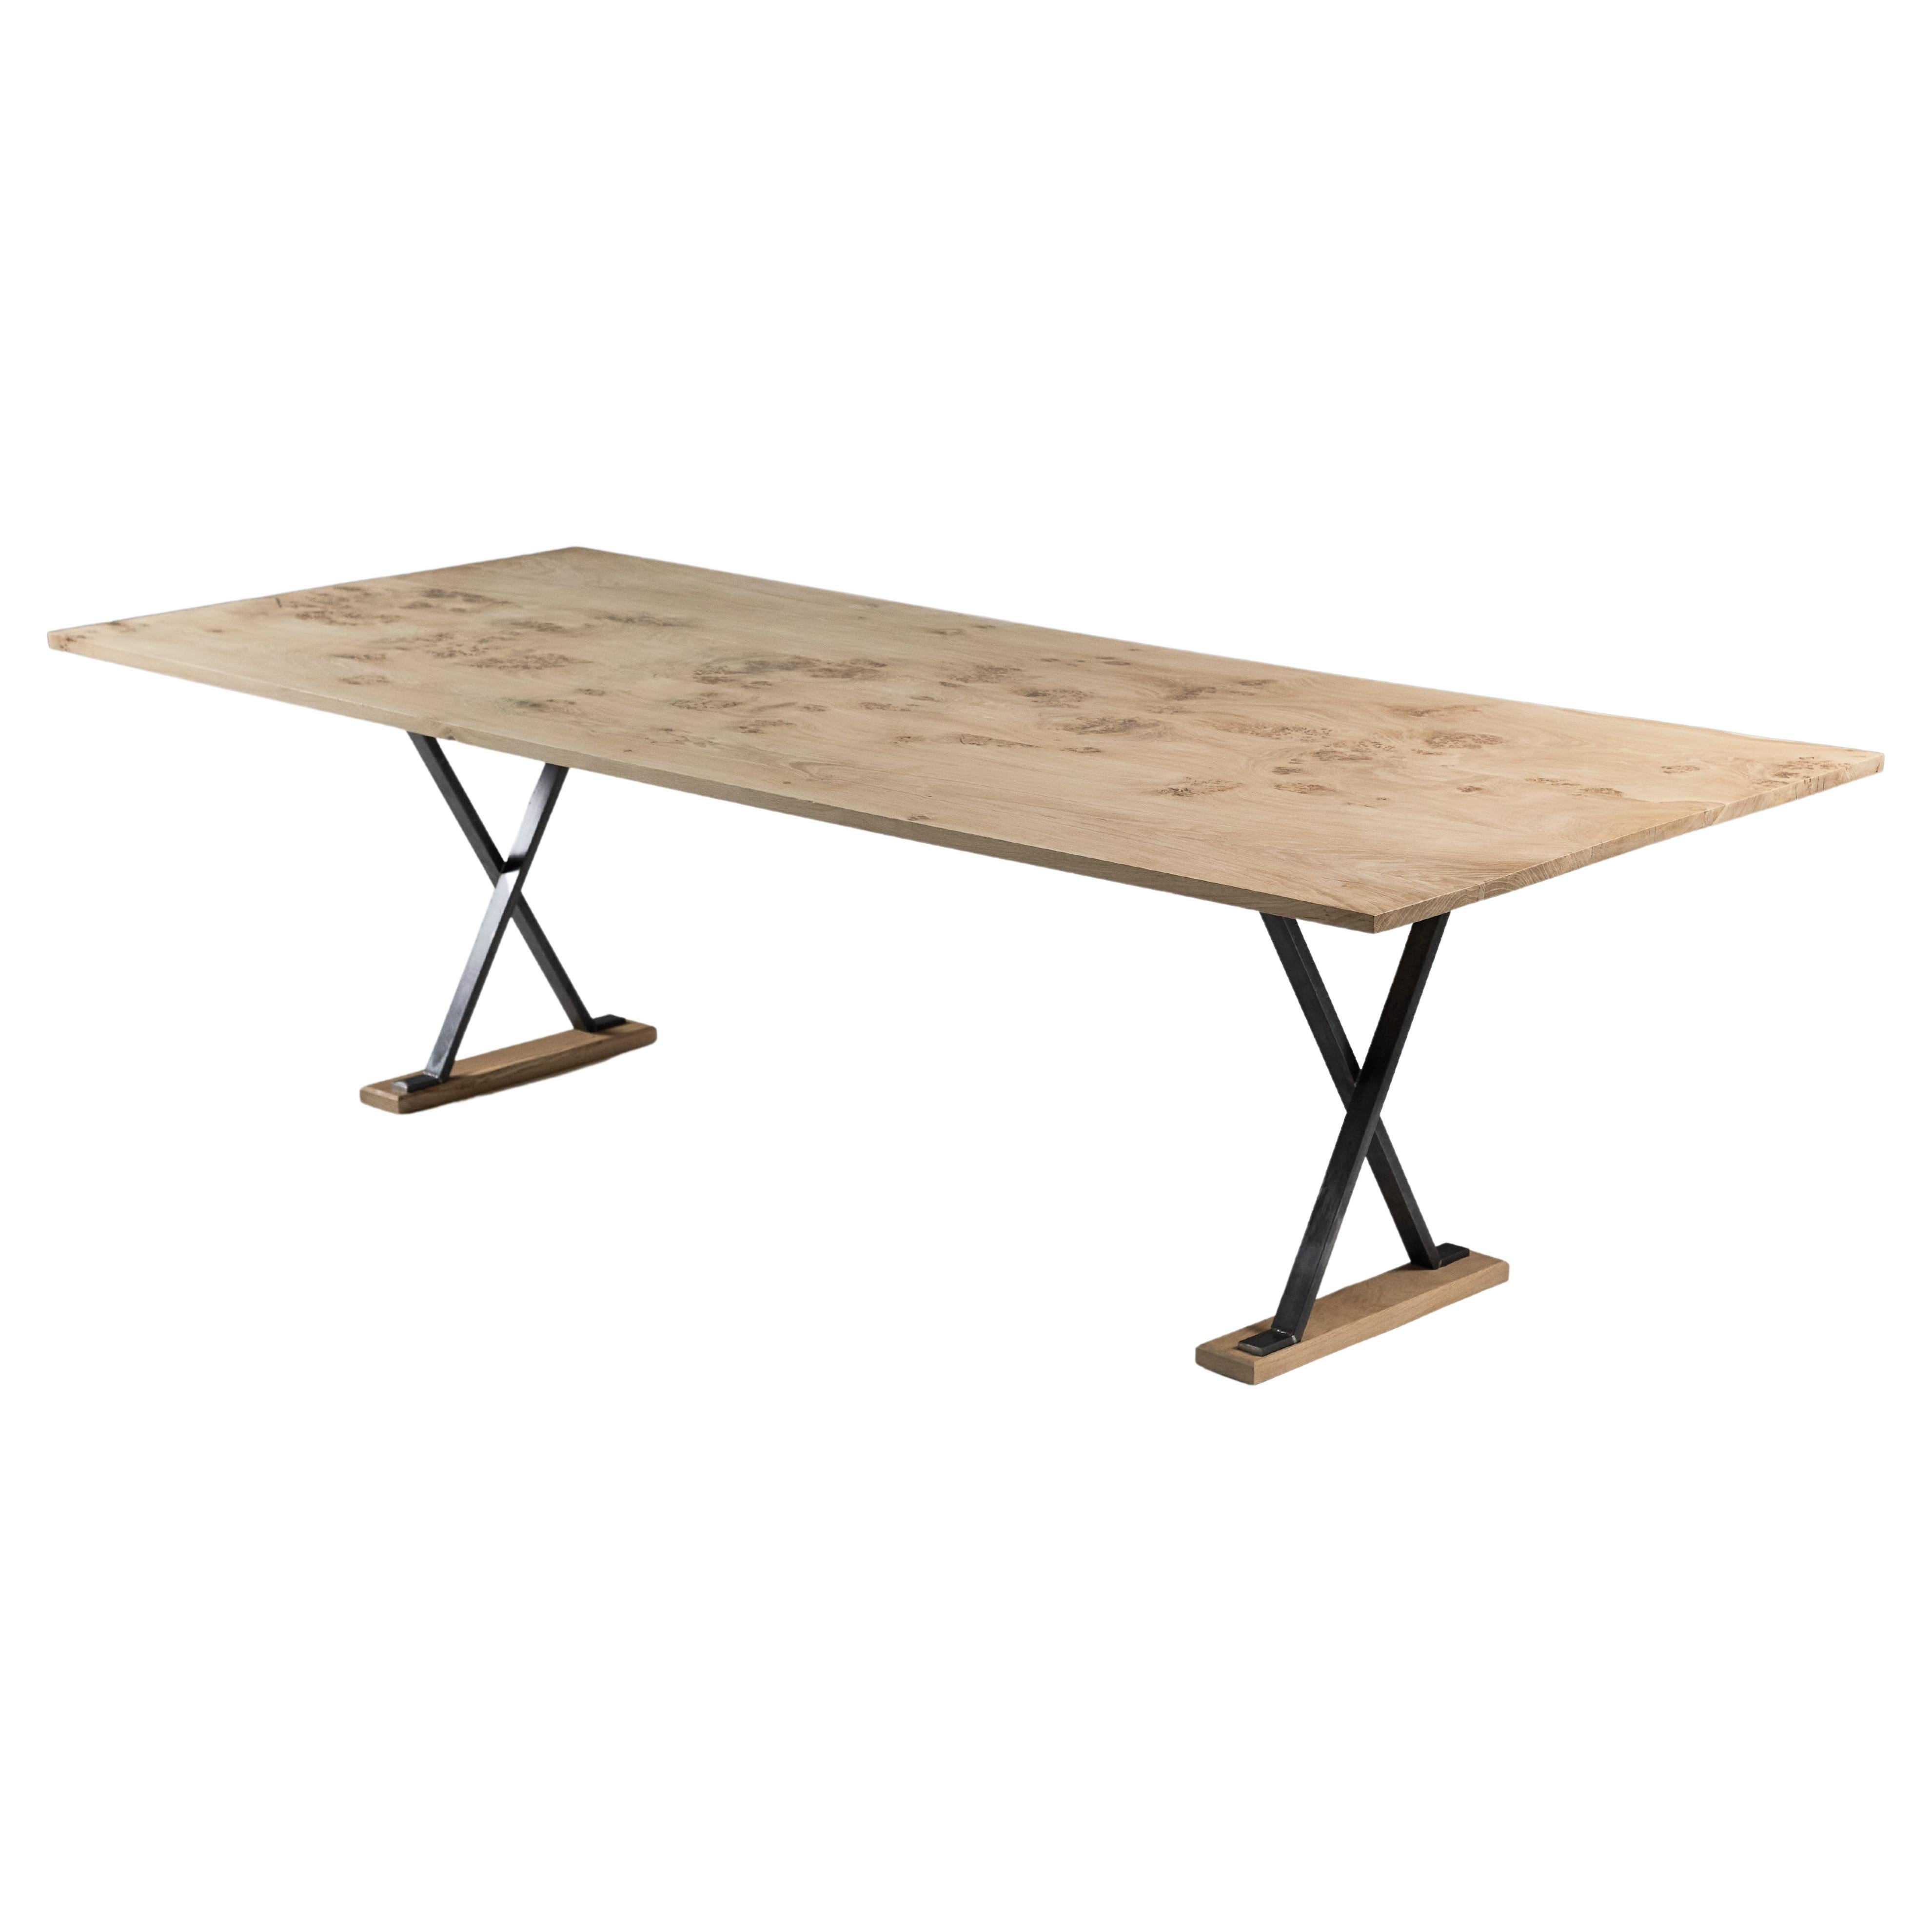 Oak table with black waxed steel cross Legs by Jonathan Field  For Sale